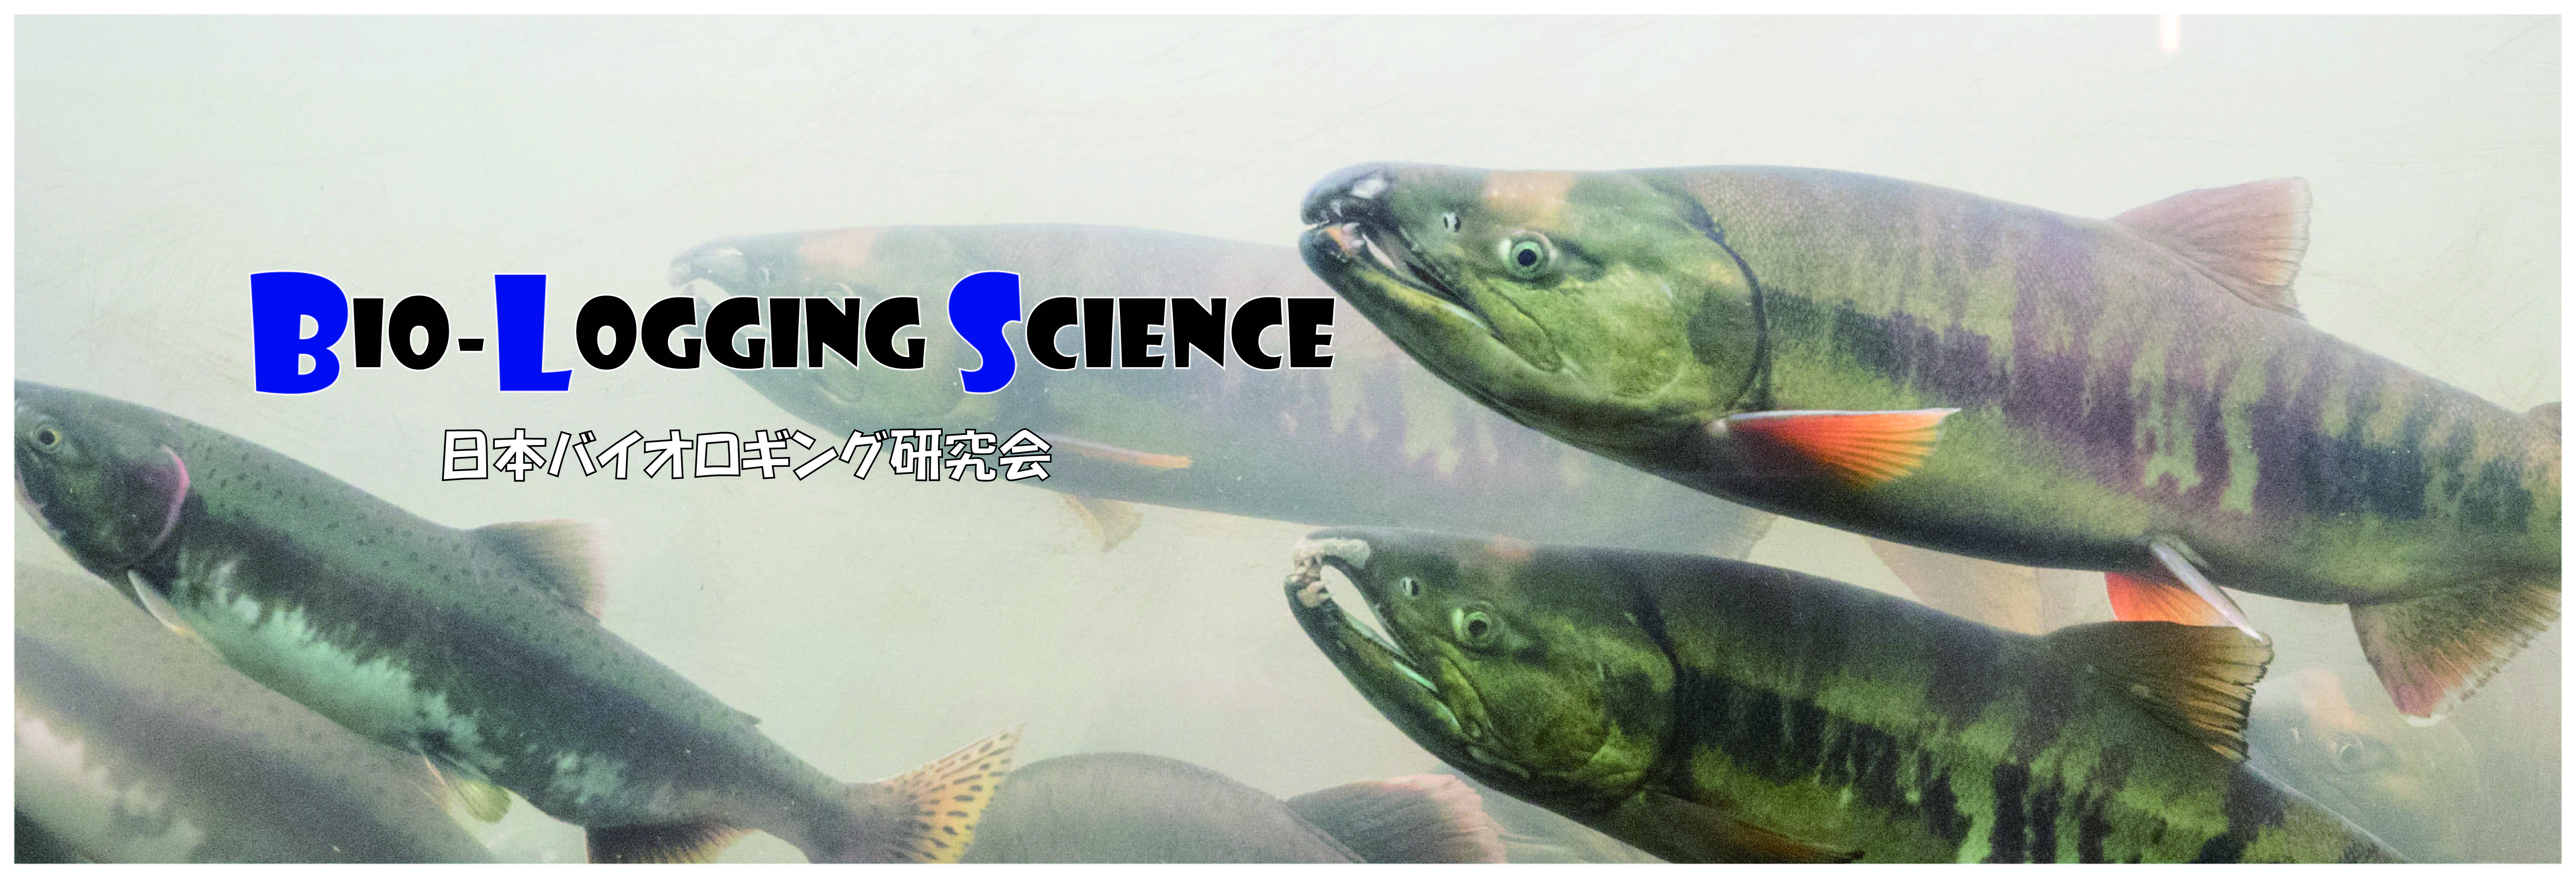 日本バイオロギング研究会_Biologging Science